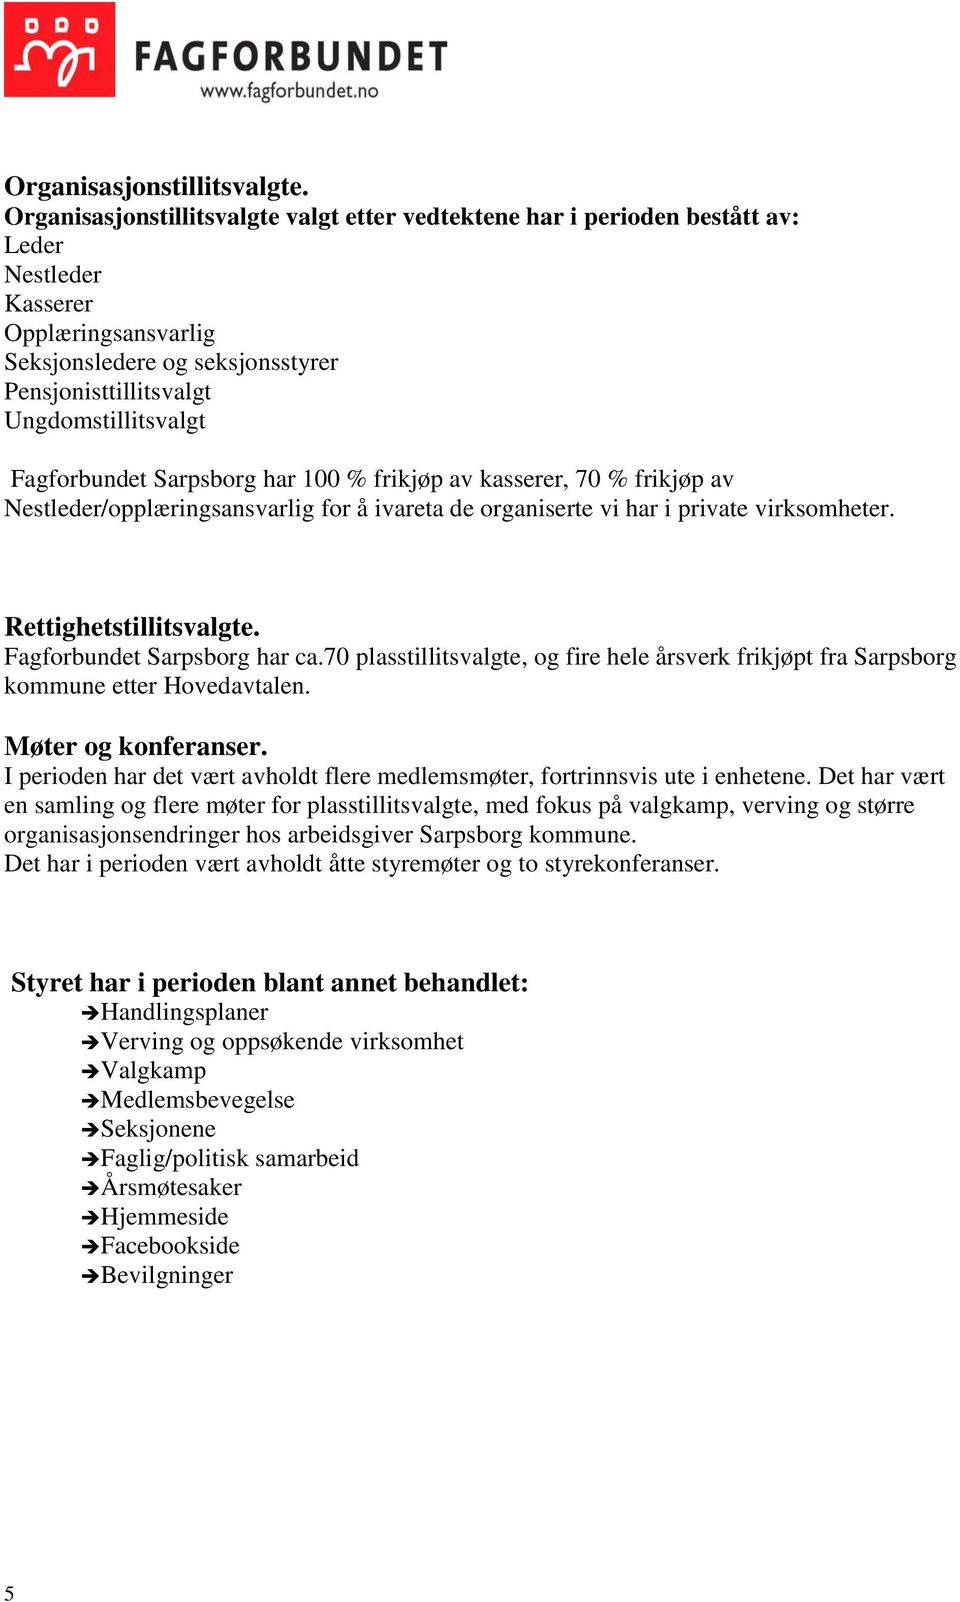 Fagforbundet Sarpsborg har 100 % frikjøp av kasserer, 70 % frikjøp av Nestleder/opplæringsansvarlig for å ivareta de organiserte vi har i private virksomheter. Rettighetstillitsvalgte.